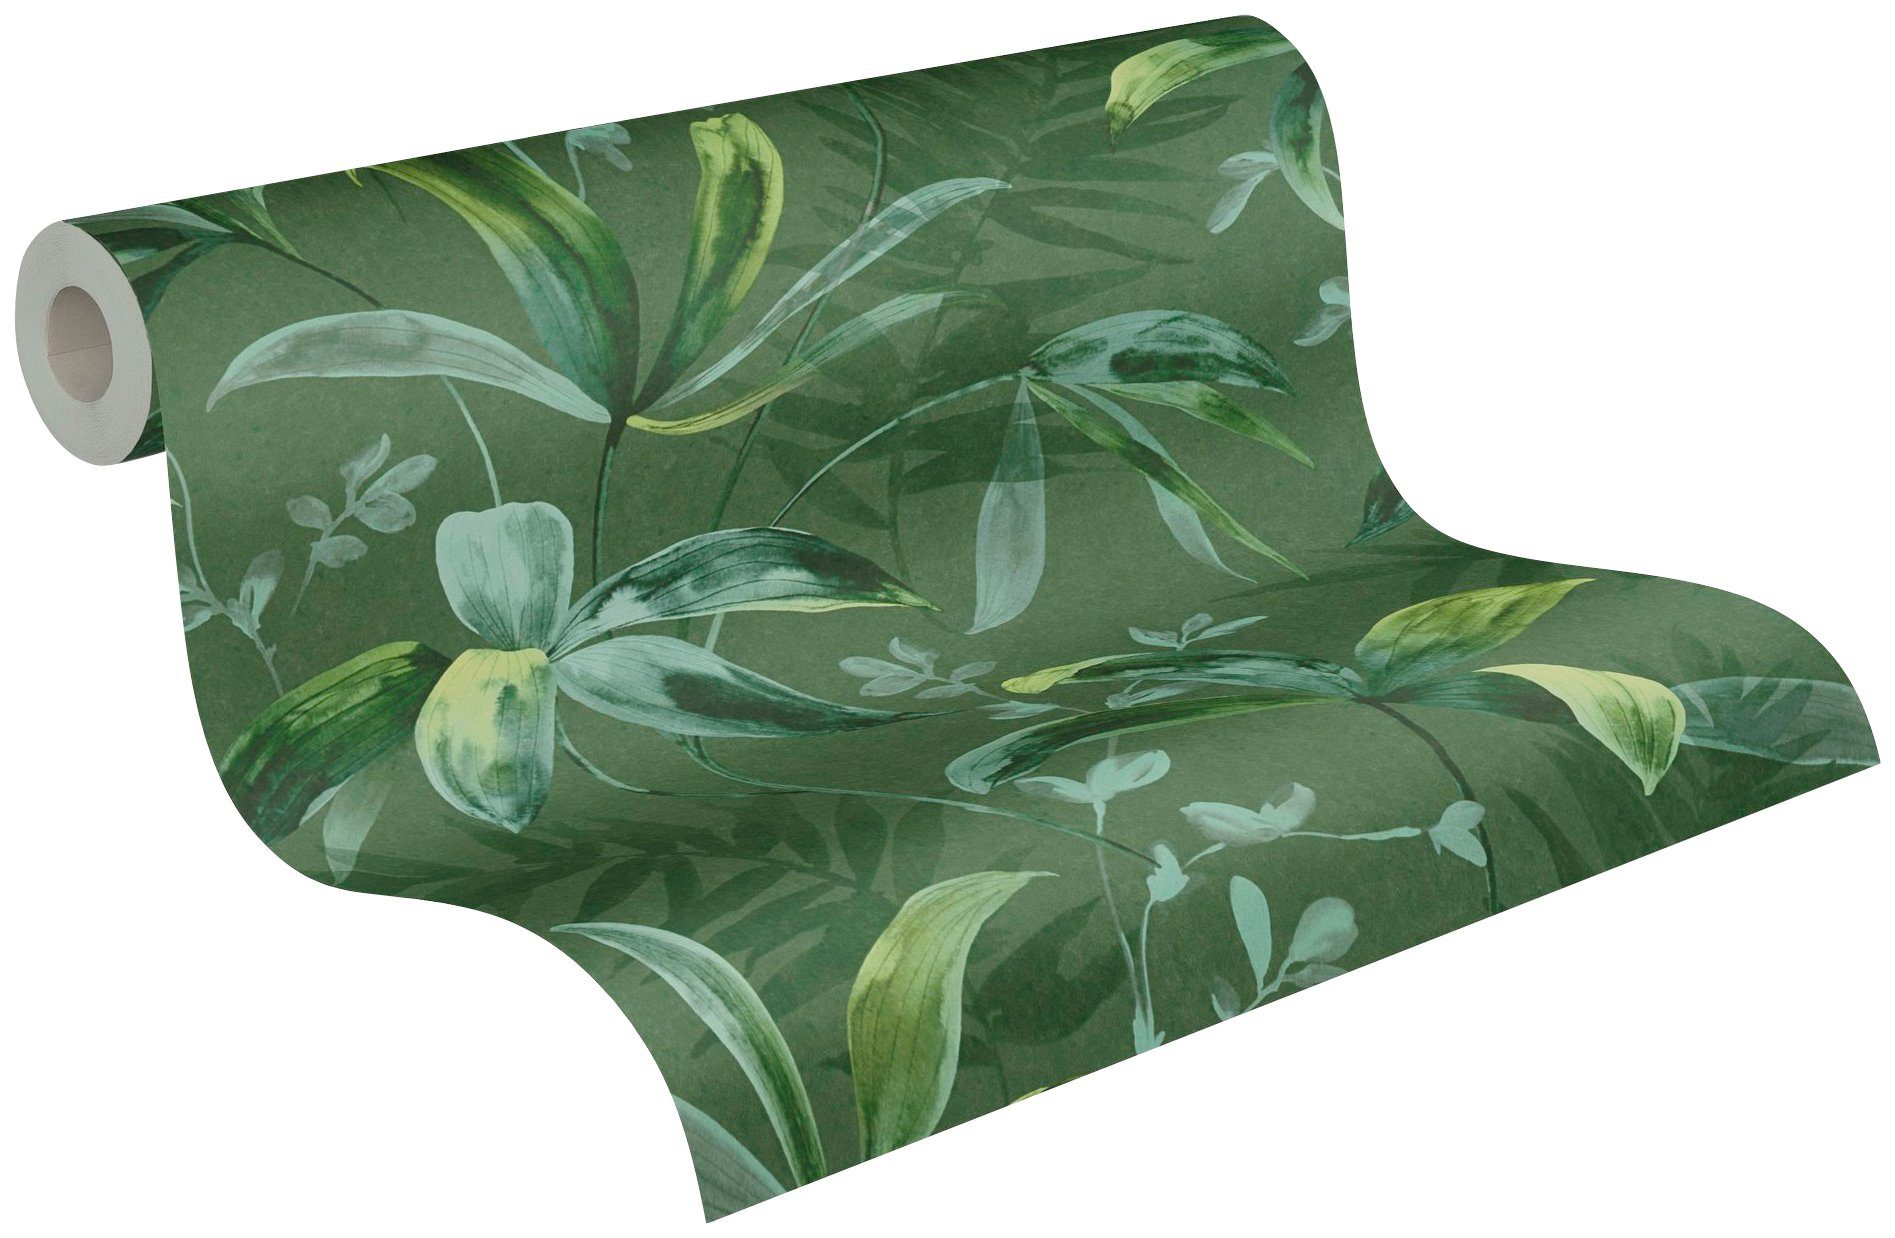 Architects Tapete Chic, Création grün Paper Jungle Dschungel Vliestapete floral, Palmentapete tropisch, A.S. botanisch, glatt,